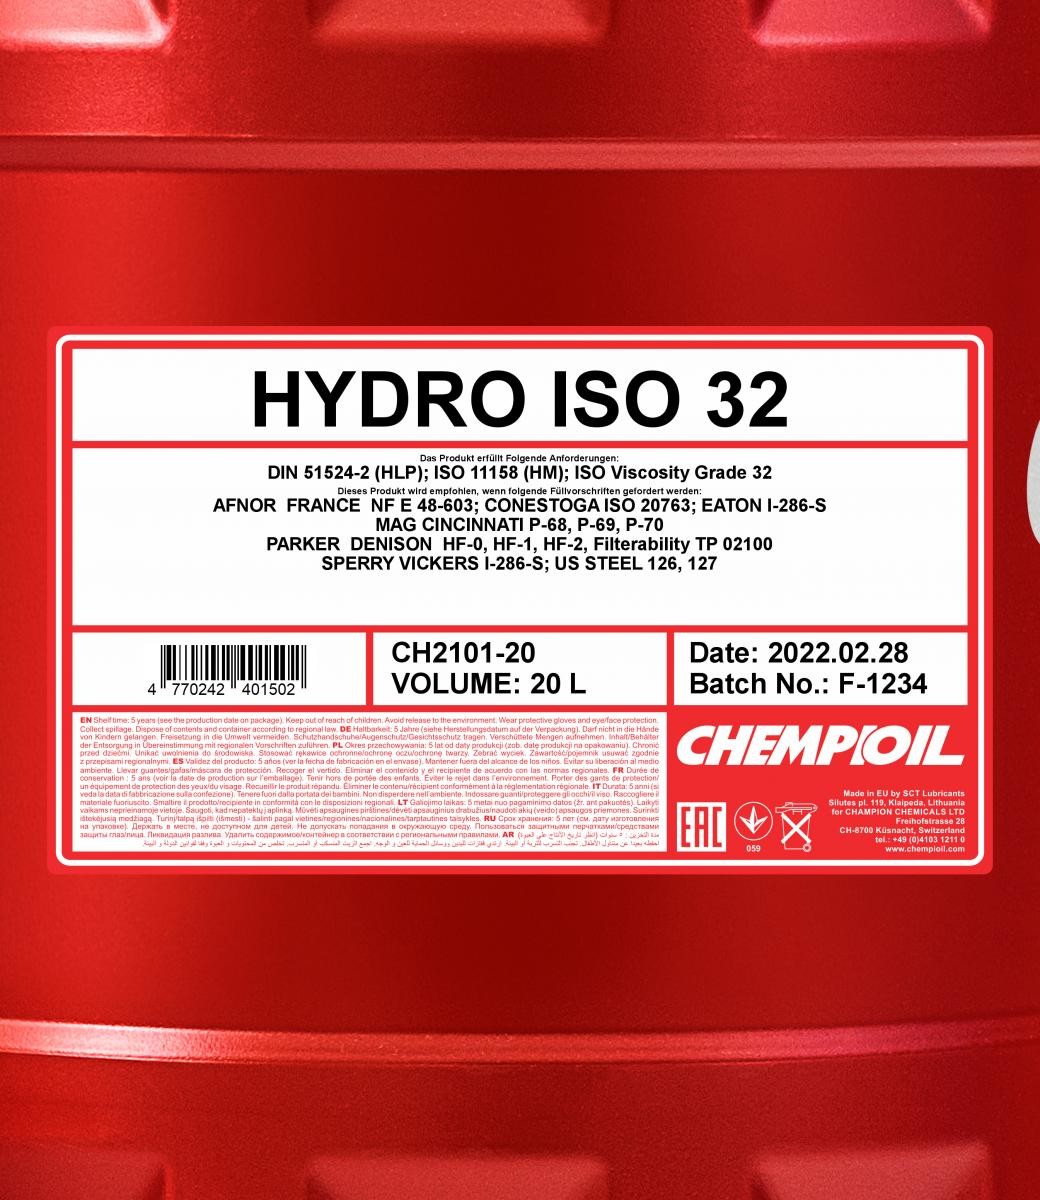 CHEMPIOIL Hydraulic fluid CH2101-20